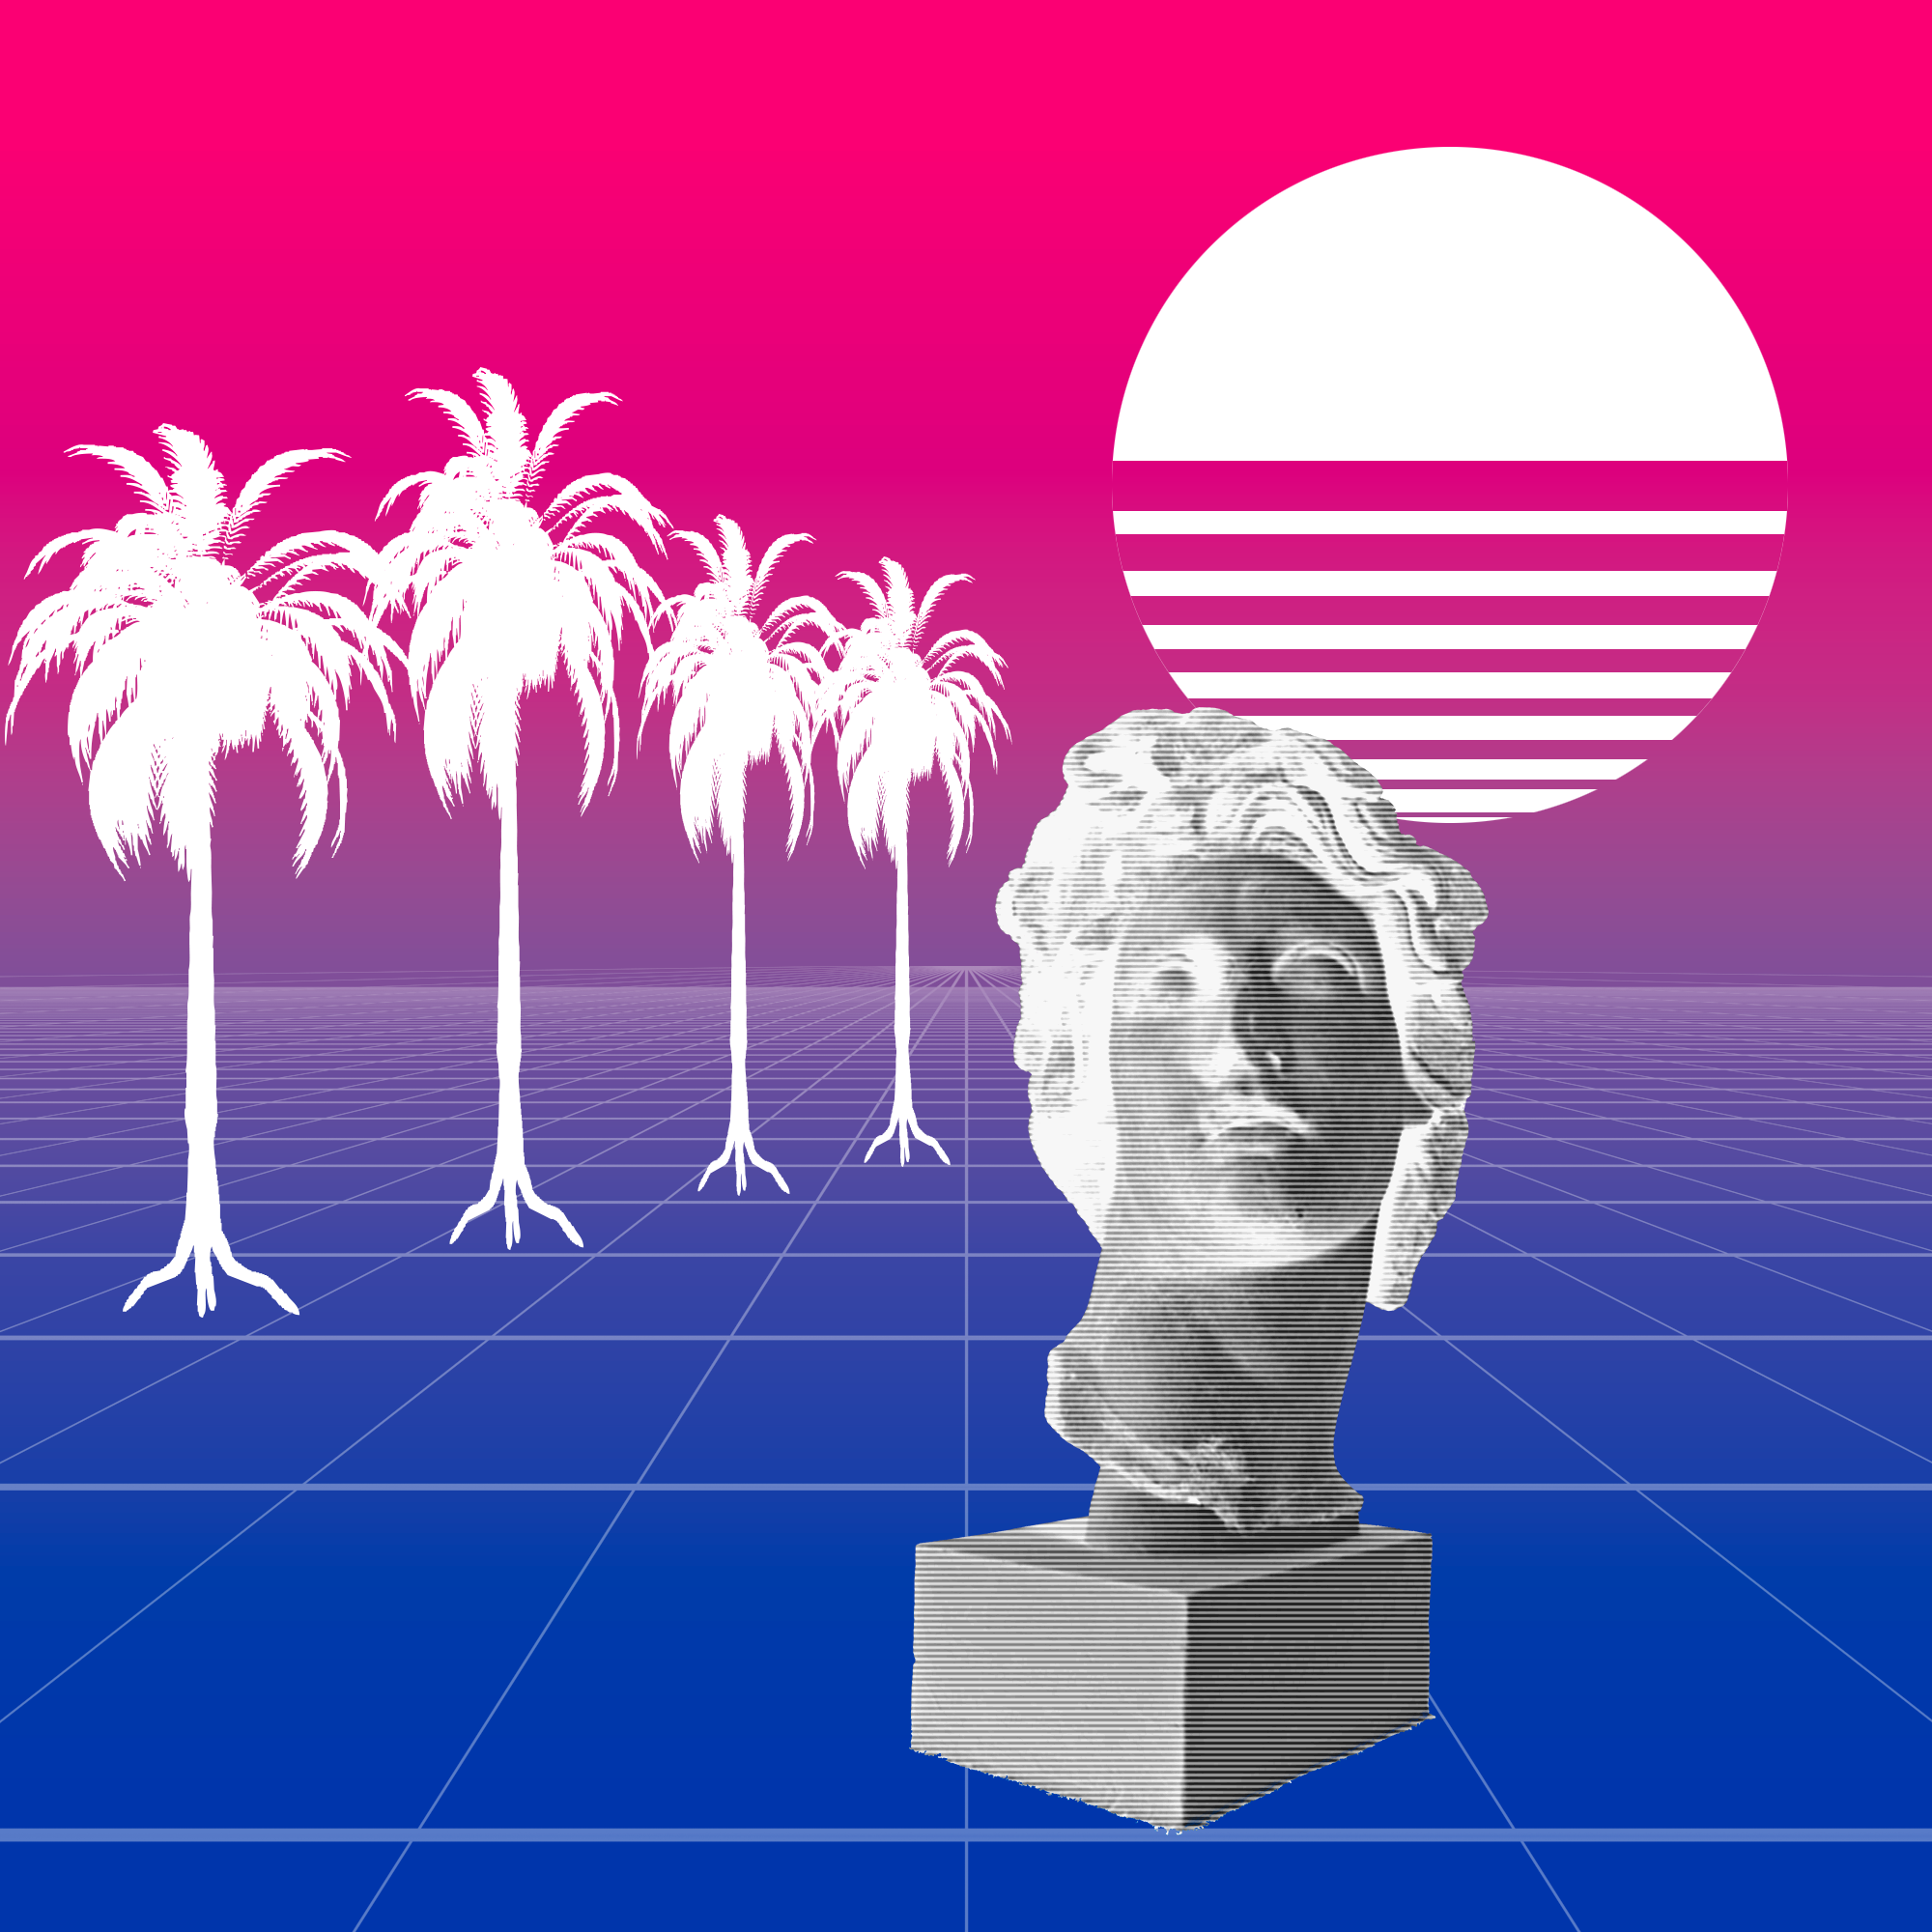 Um fundo de degradê rosa/roxo/azul com um chão quadriculado, um sol estilizado em um canto, silhuetas de palmeiras em outro canto e um busto de Davi preto-e-branco e com um filtro quadriculado na frente.